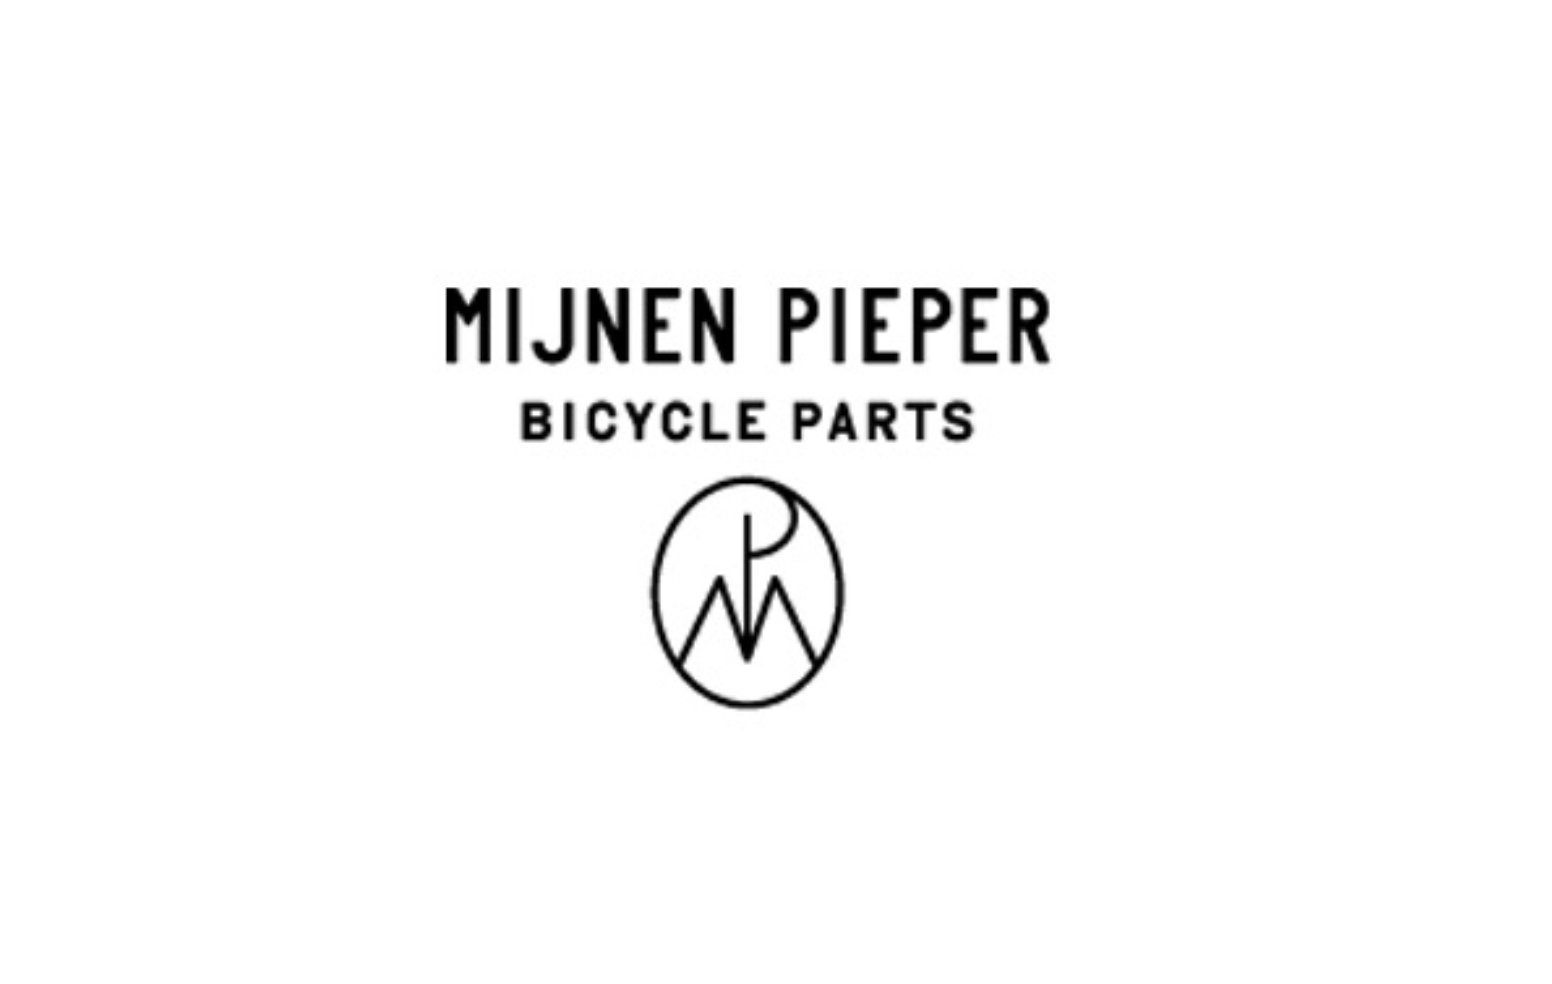 Mijnen Pieper